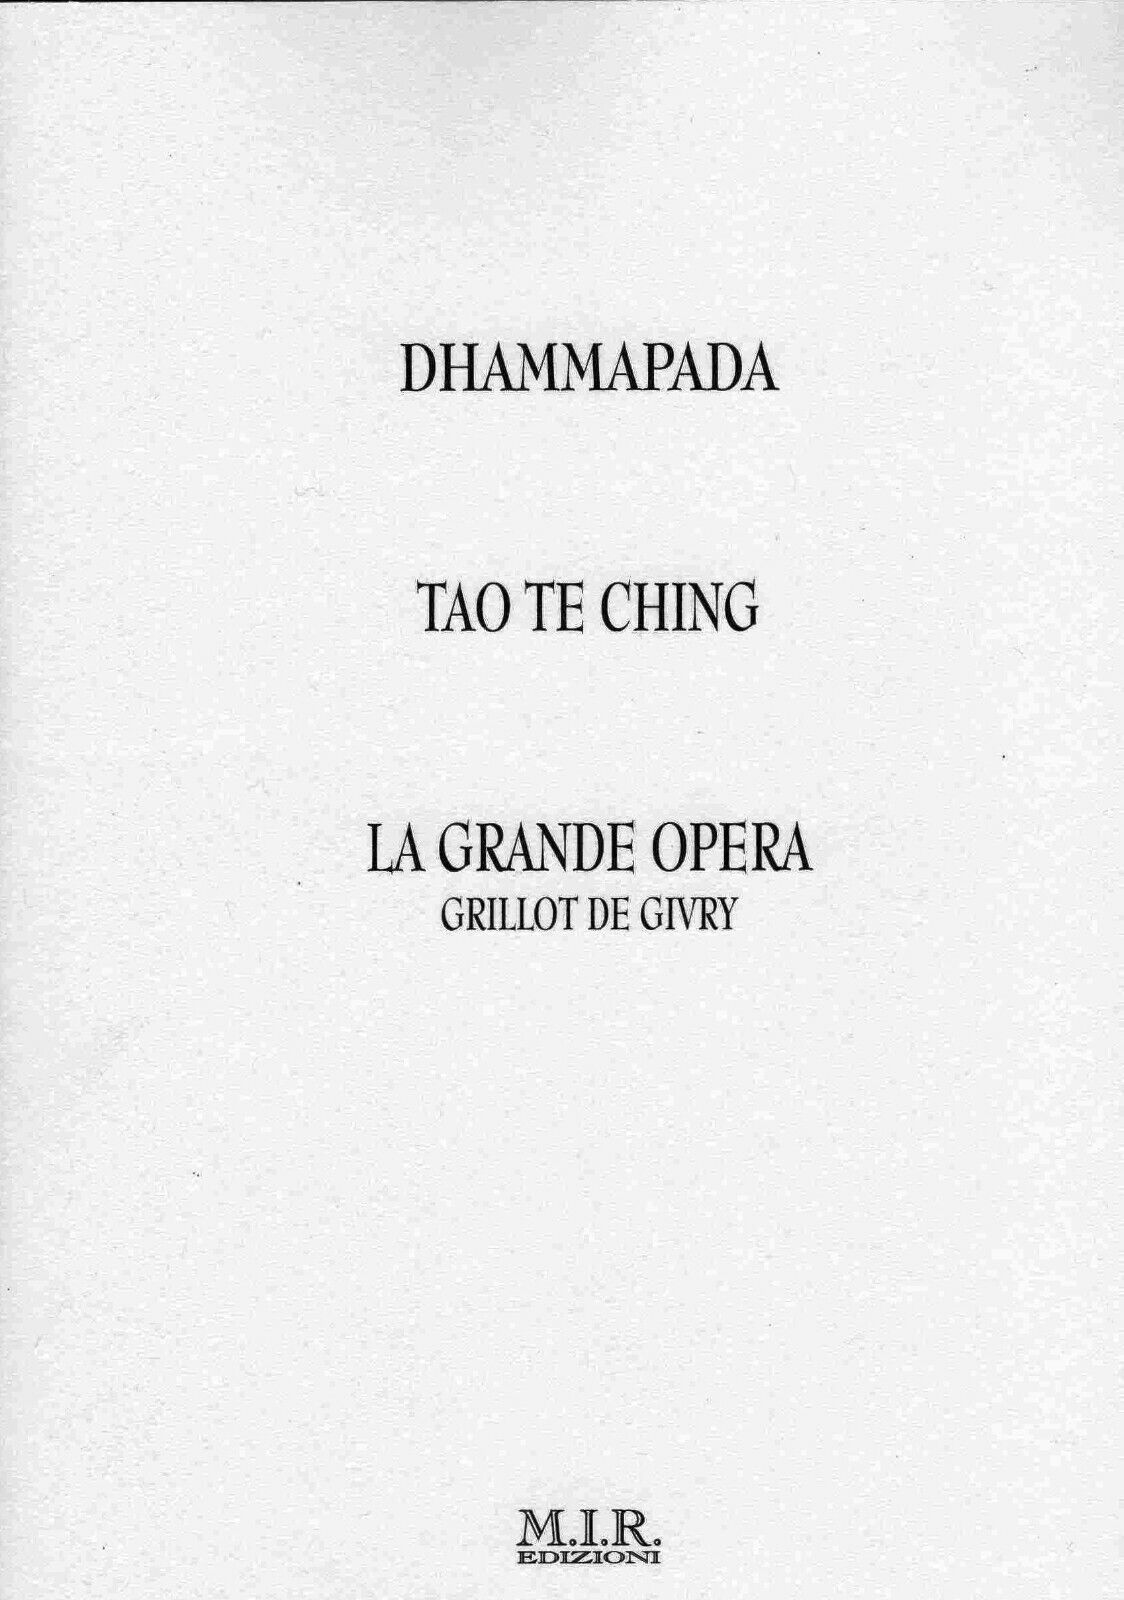 Dhammapada-Tao te ching-La grande opera di Grillot De Givry,  2010,  Mir Edizion